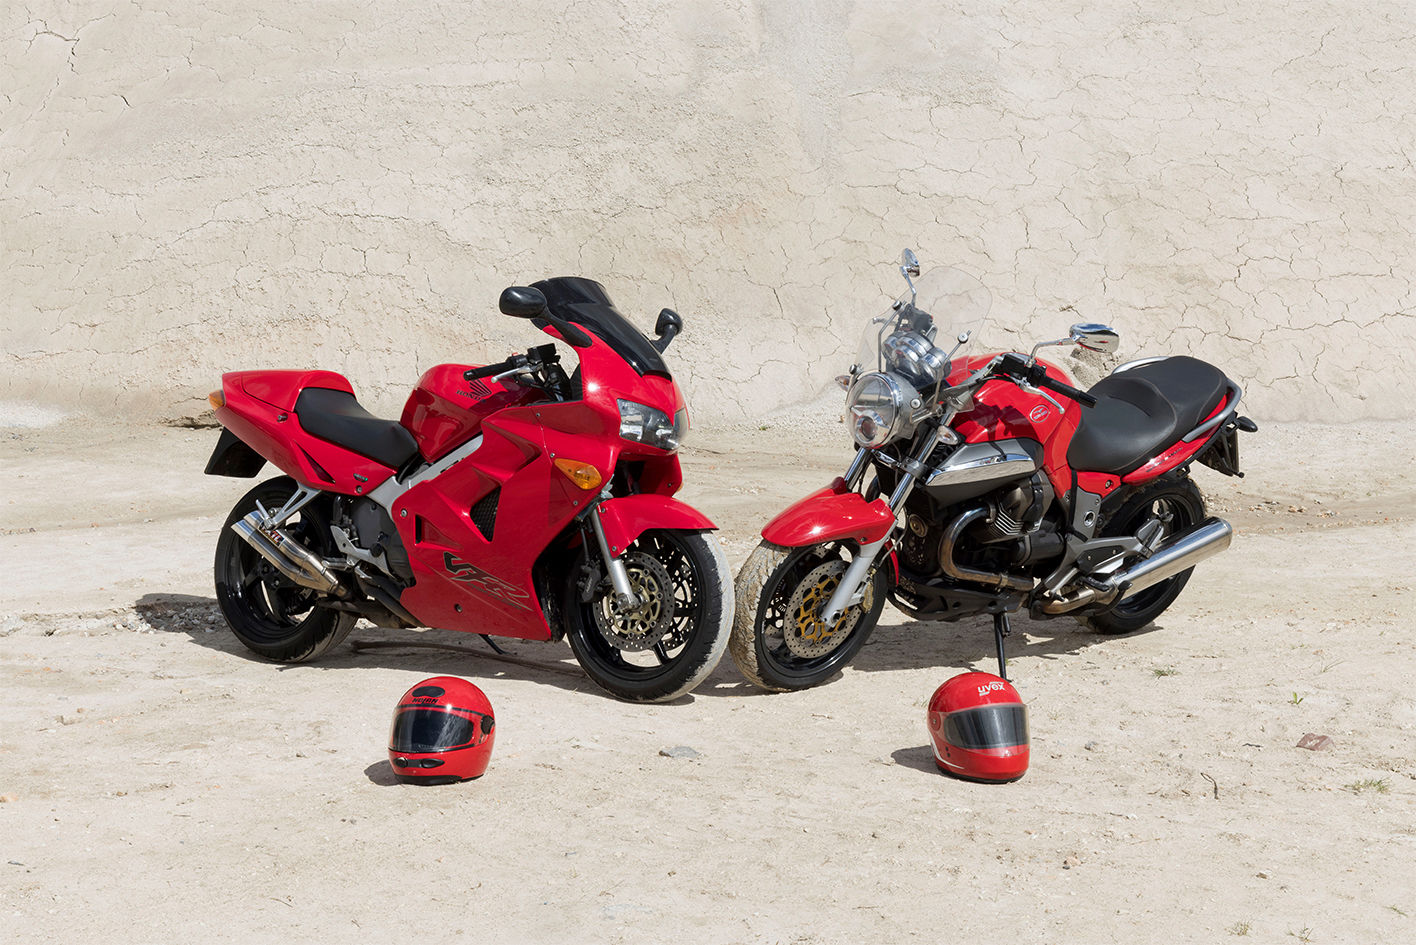 Fotografie von zwei roten Motorrädern mit Helmen zu Deutung 127